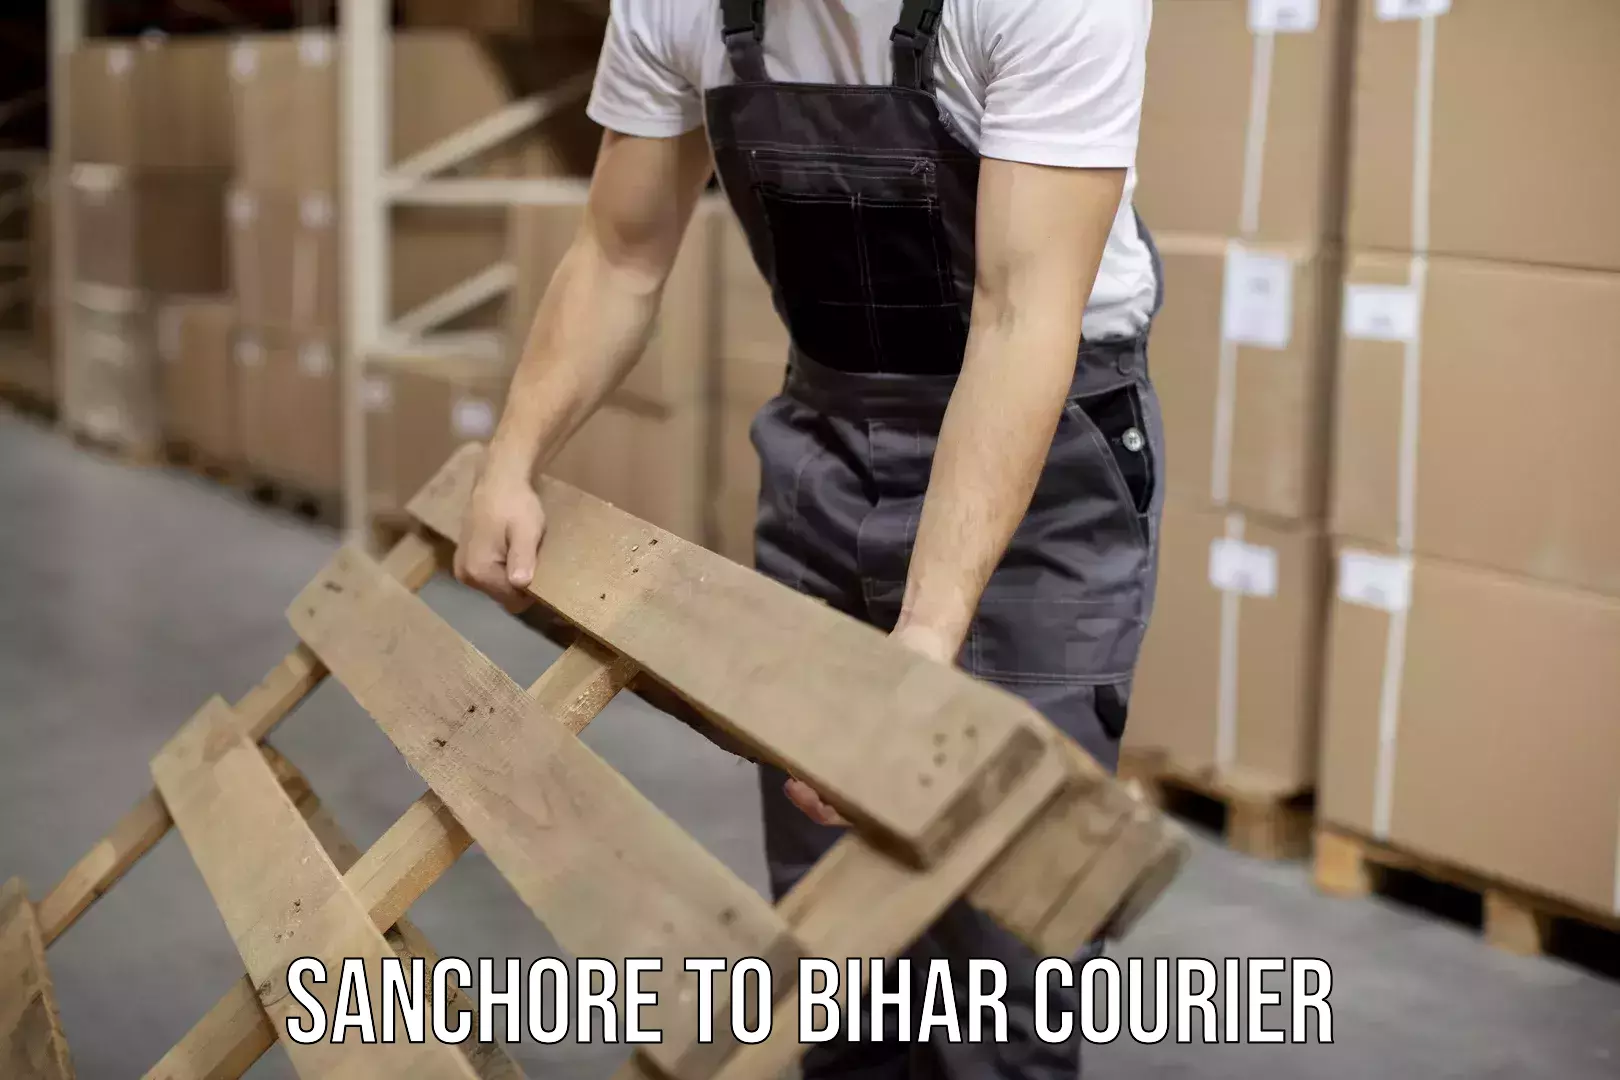 Speedy delivery service Sanchore to Bihar